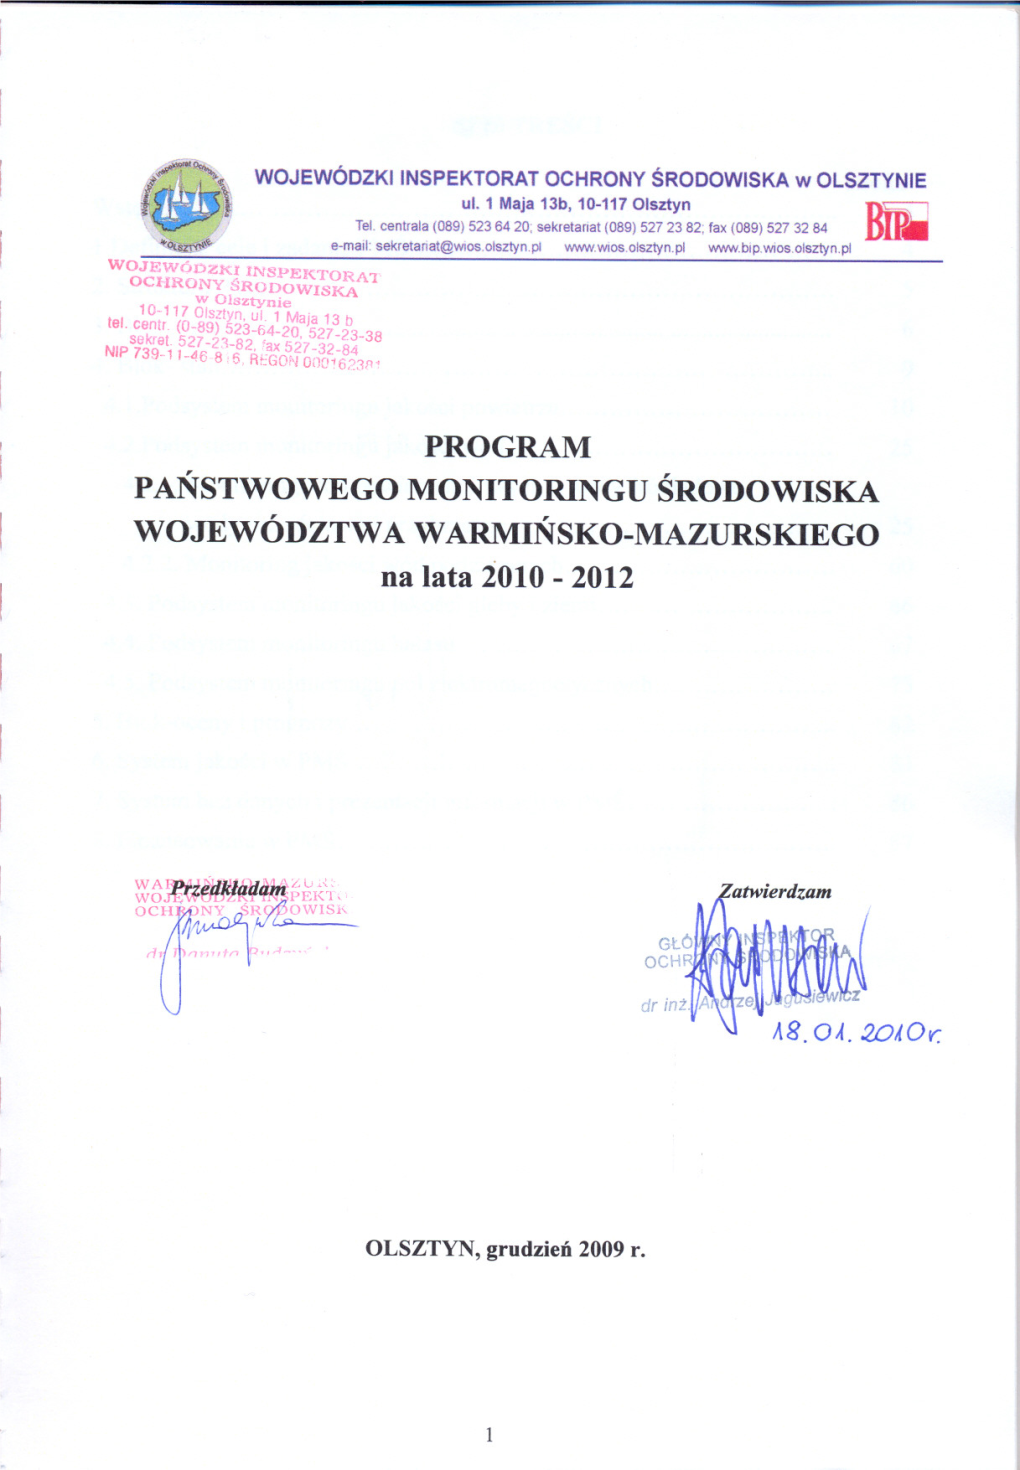 PROGRAM PANSTWOWEGO MONITORINGU SRODOWISKA WOJEWÓDZTWA WARMINSKO-MAZURSKIEGO Na Lata 2010 - 2012